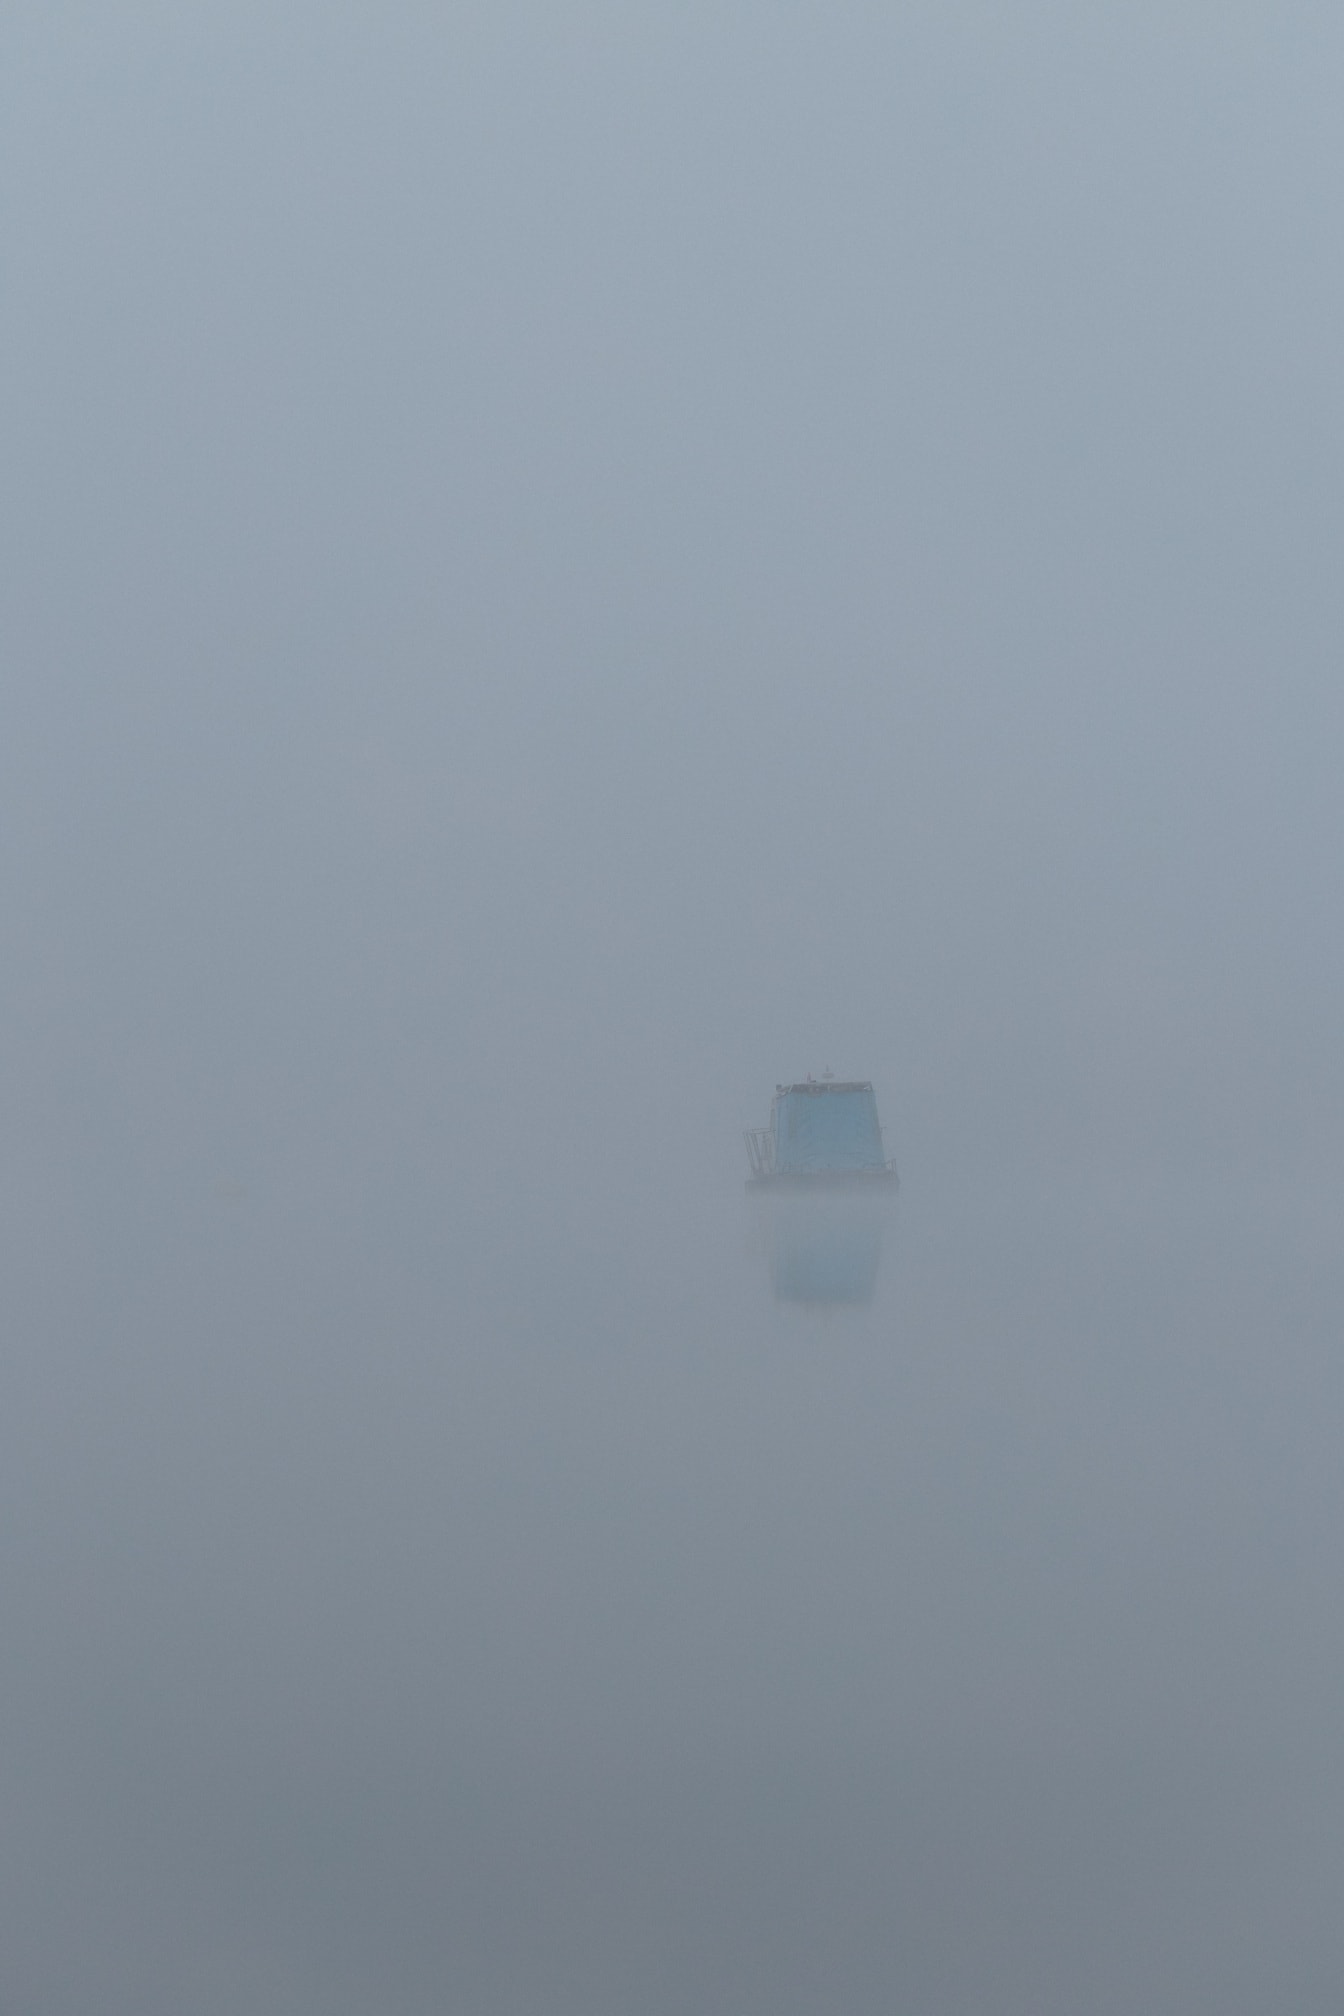 Tung dimma på sjösidan med fiskebåt i fjärran